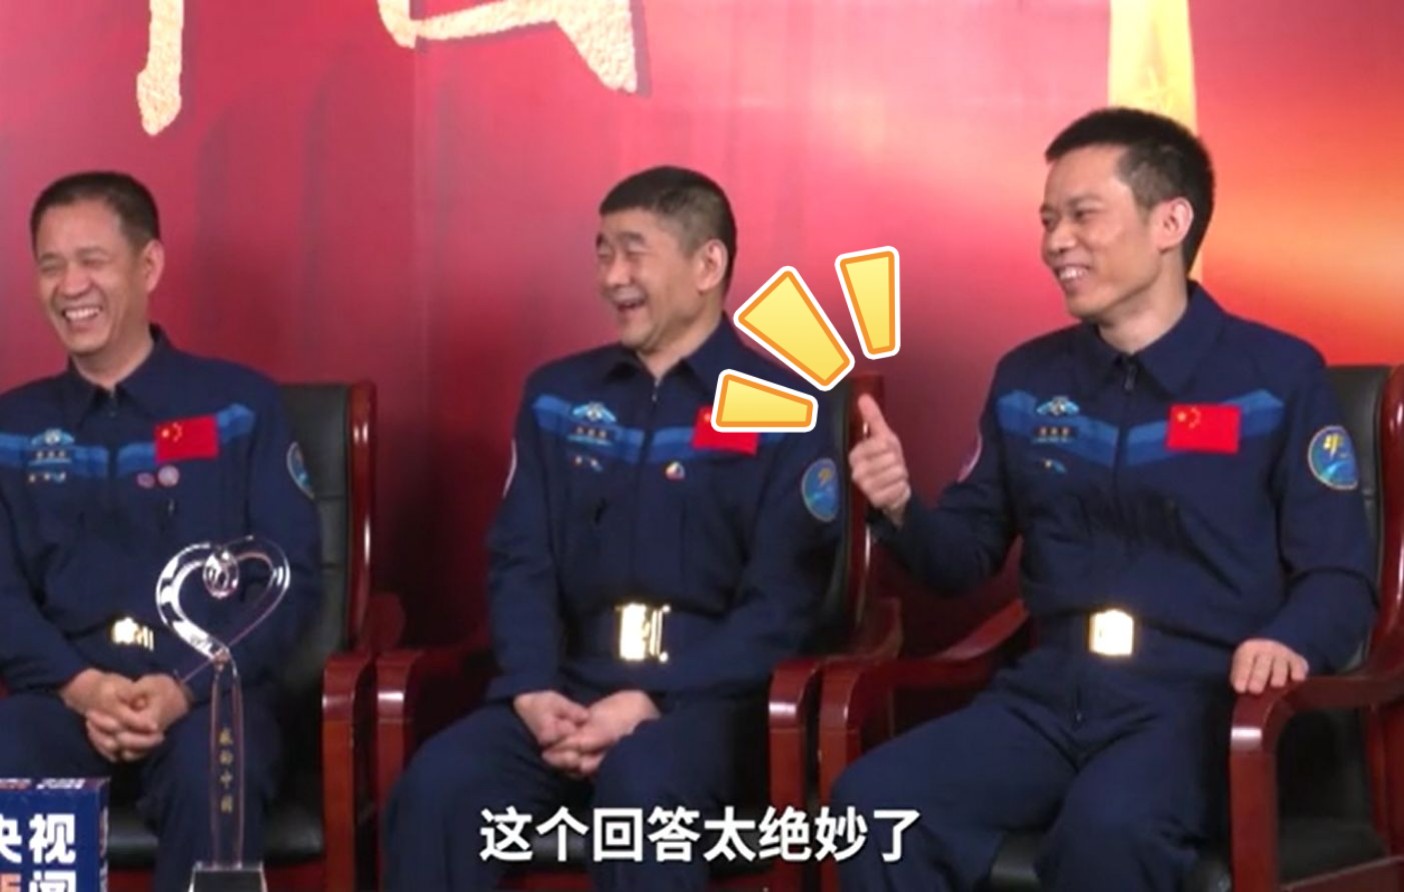 当主持人问到三人在太空中有没有红过脸，刘伯明的回答亮了……